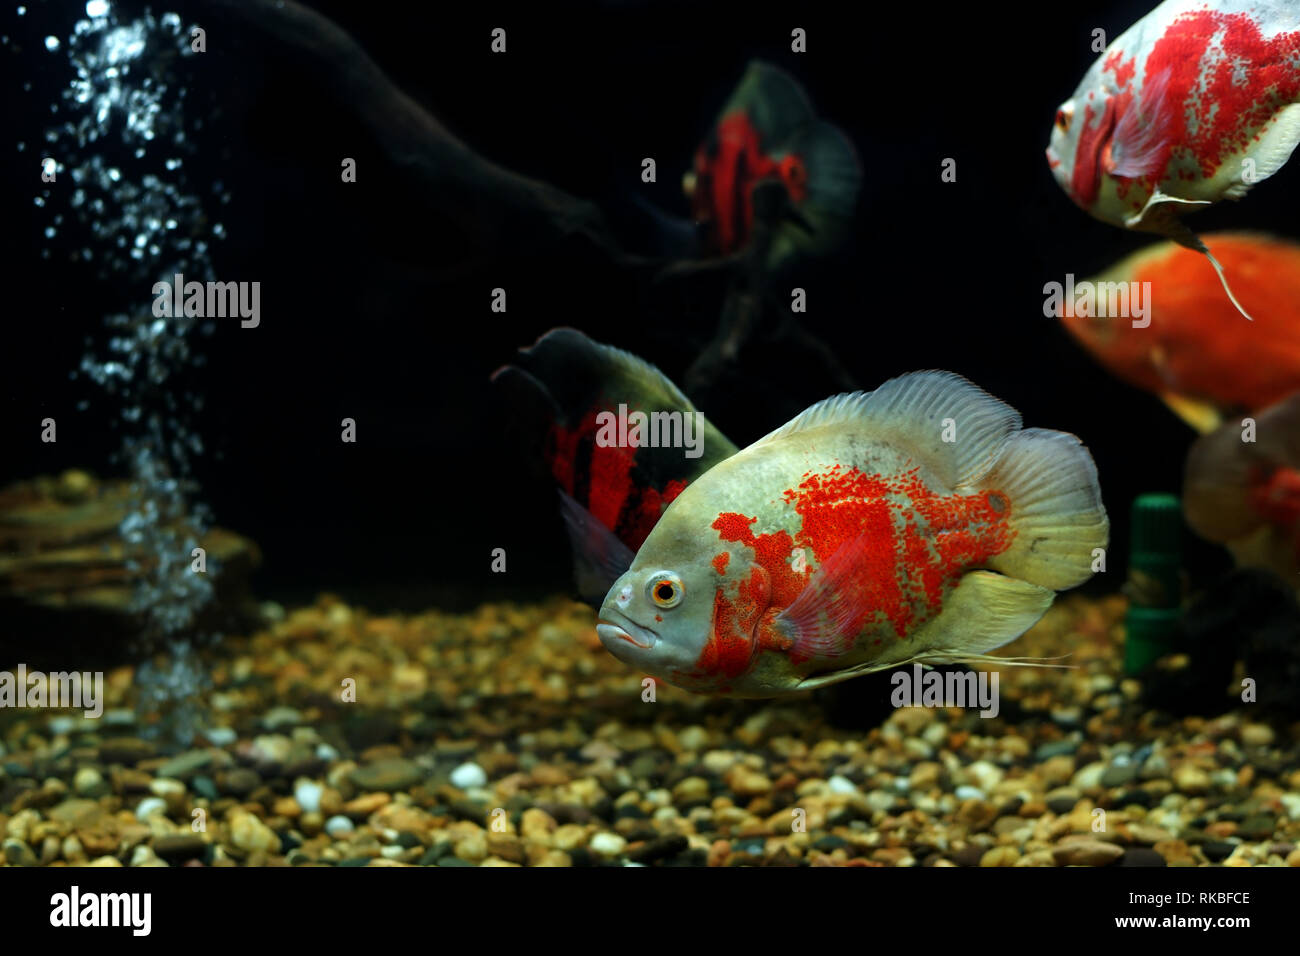 astronotus ocellatus or oscar fish fish in the aquarium Stock Photo